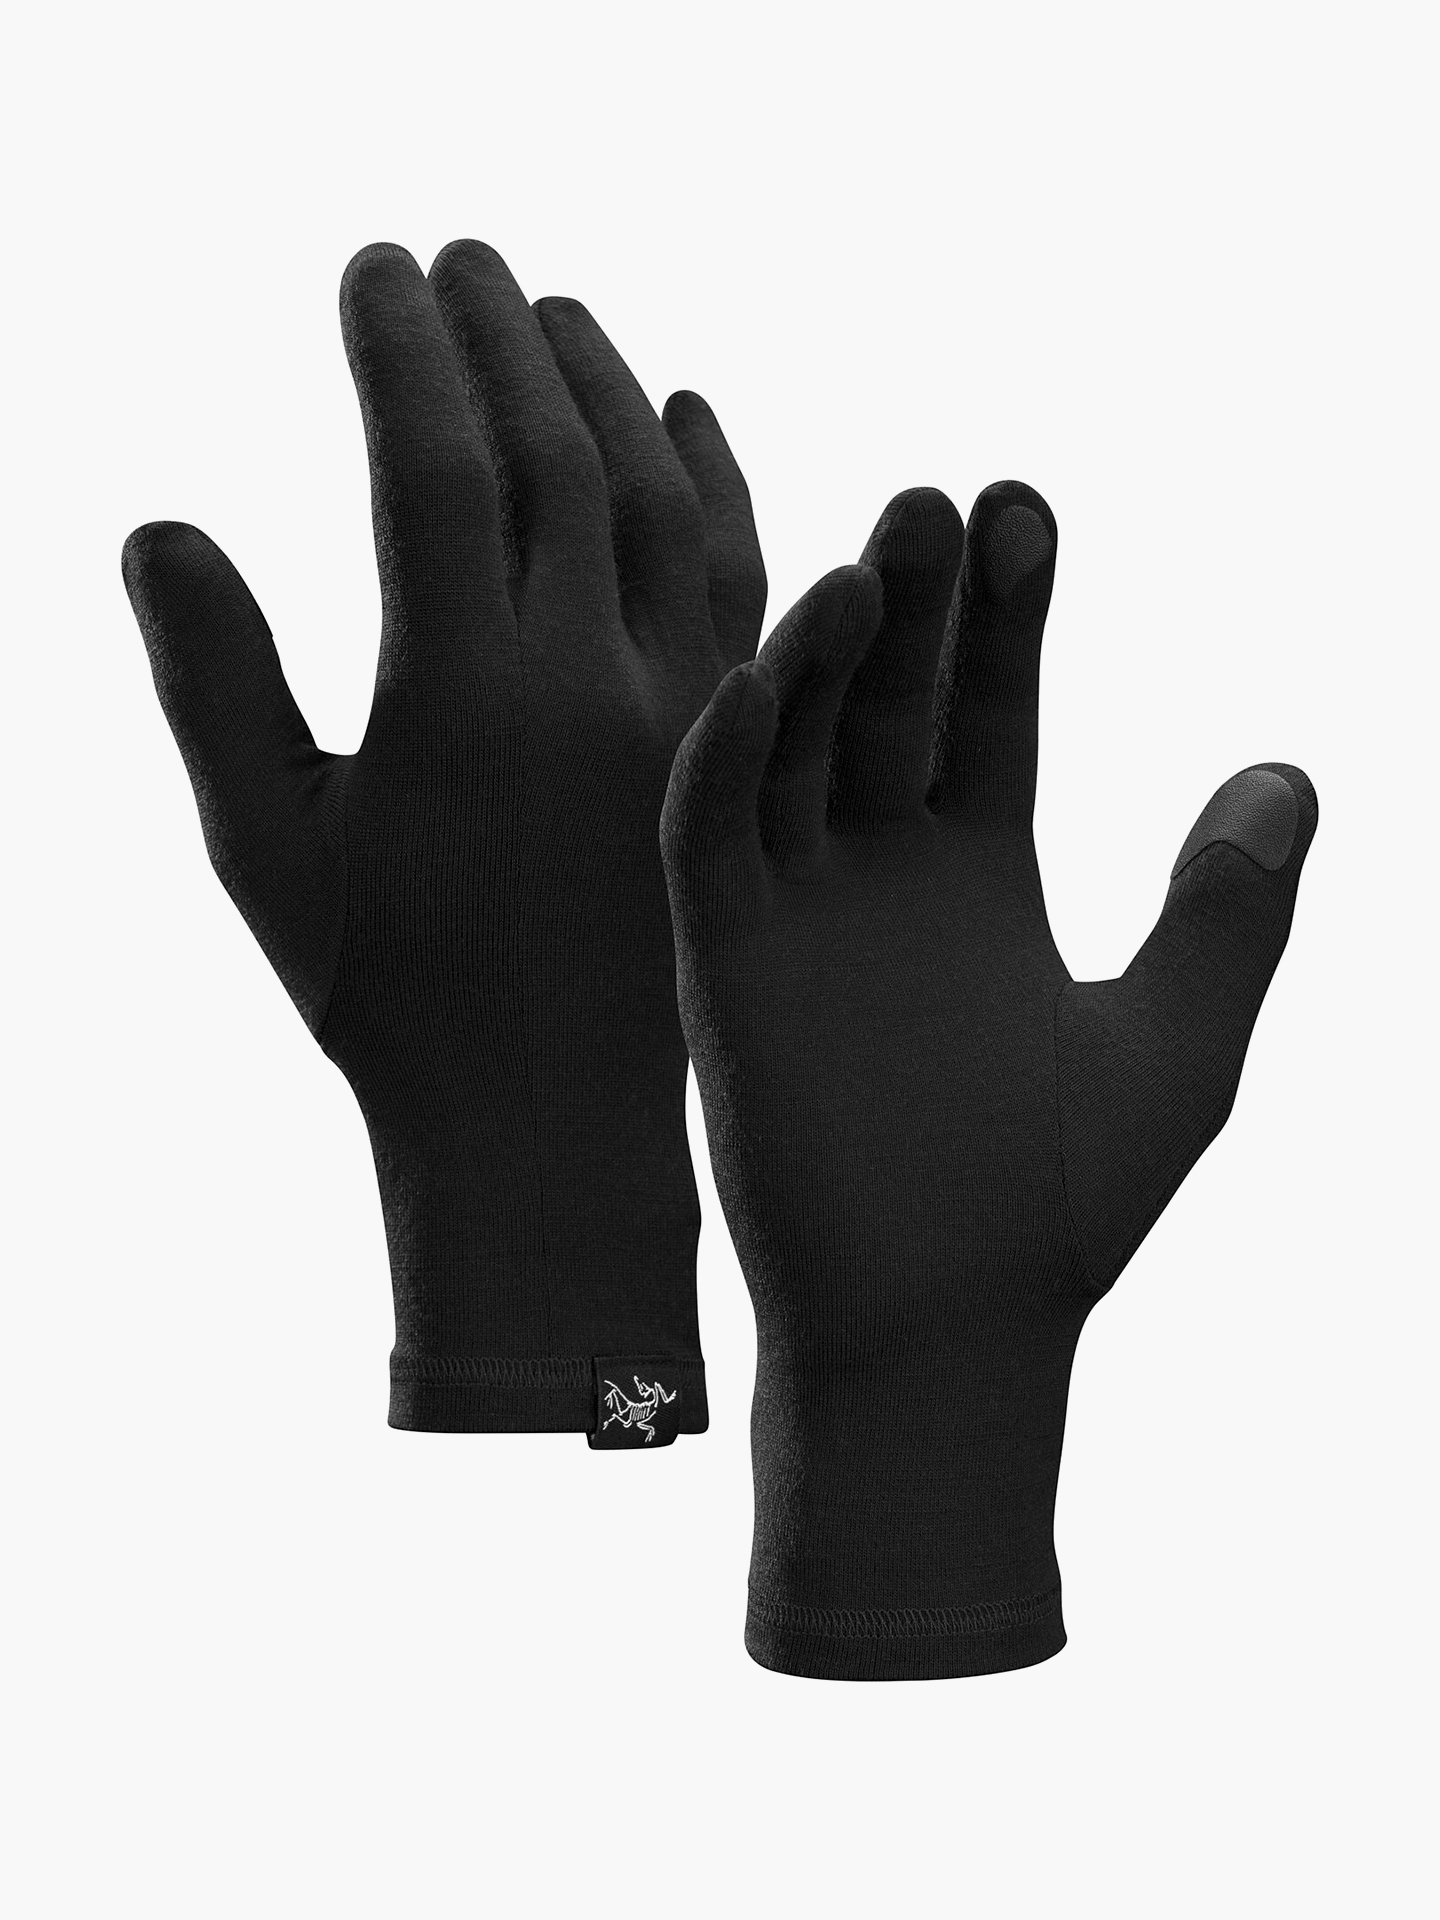 L06941900/L Перчатки Arcteryx Gothic Glove Black, L L06941900/L, размер L